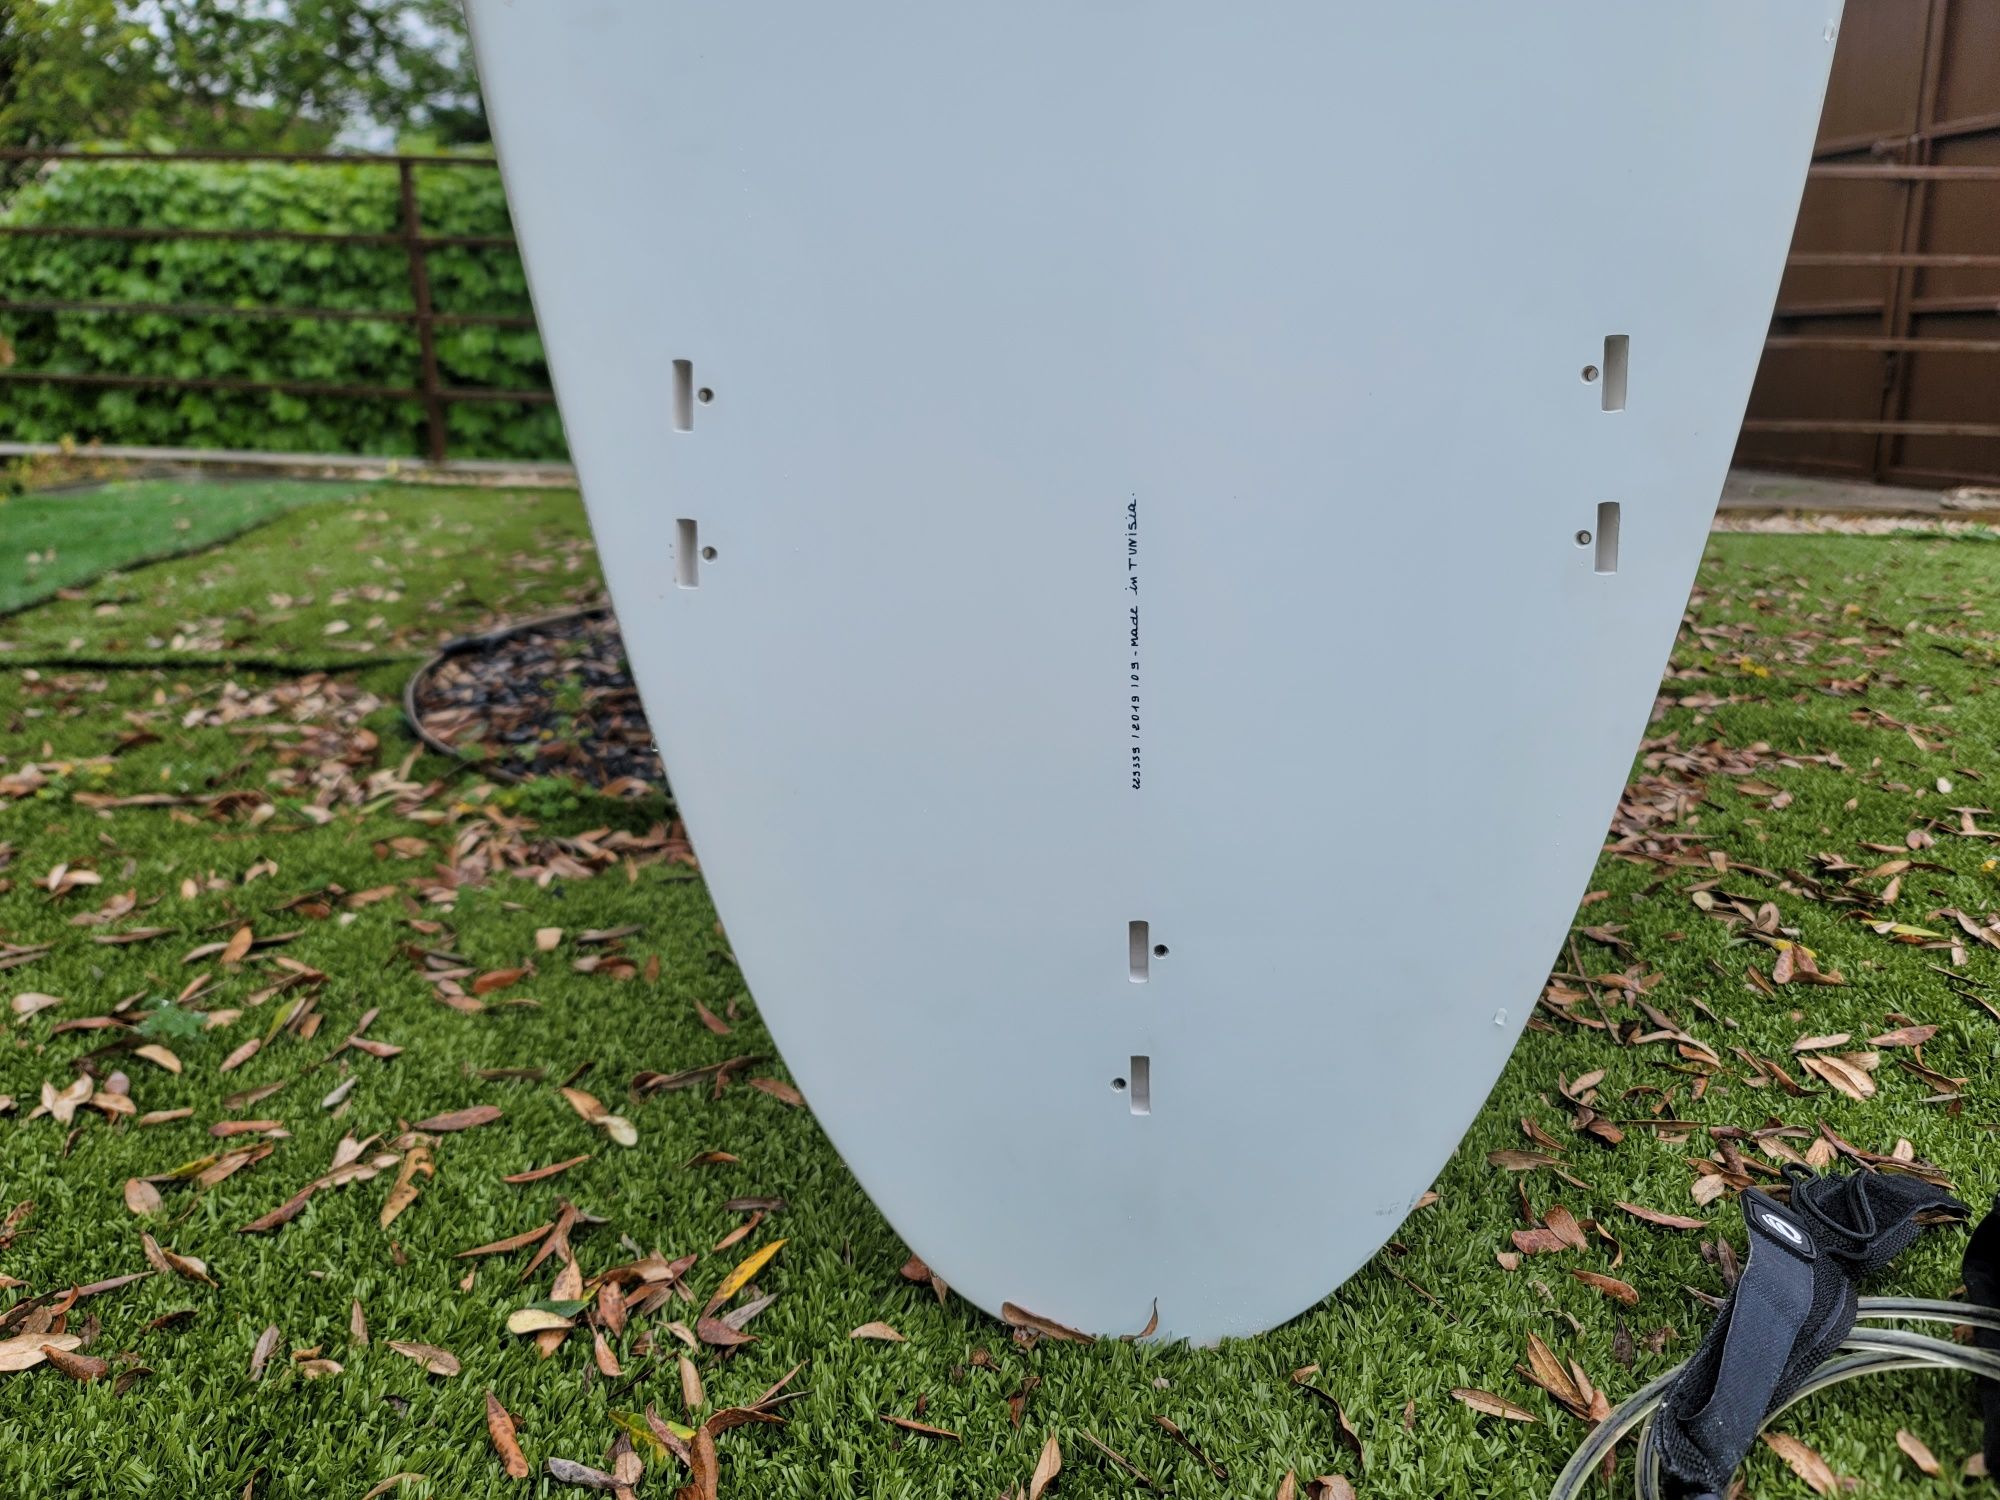 Vendo Prancha SURF DE EPOXY EGG 500 RÍGIDA/7'2